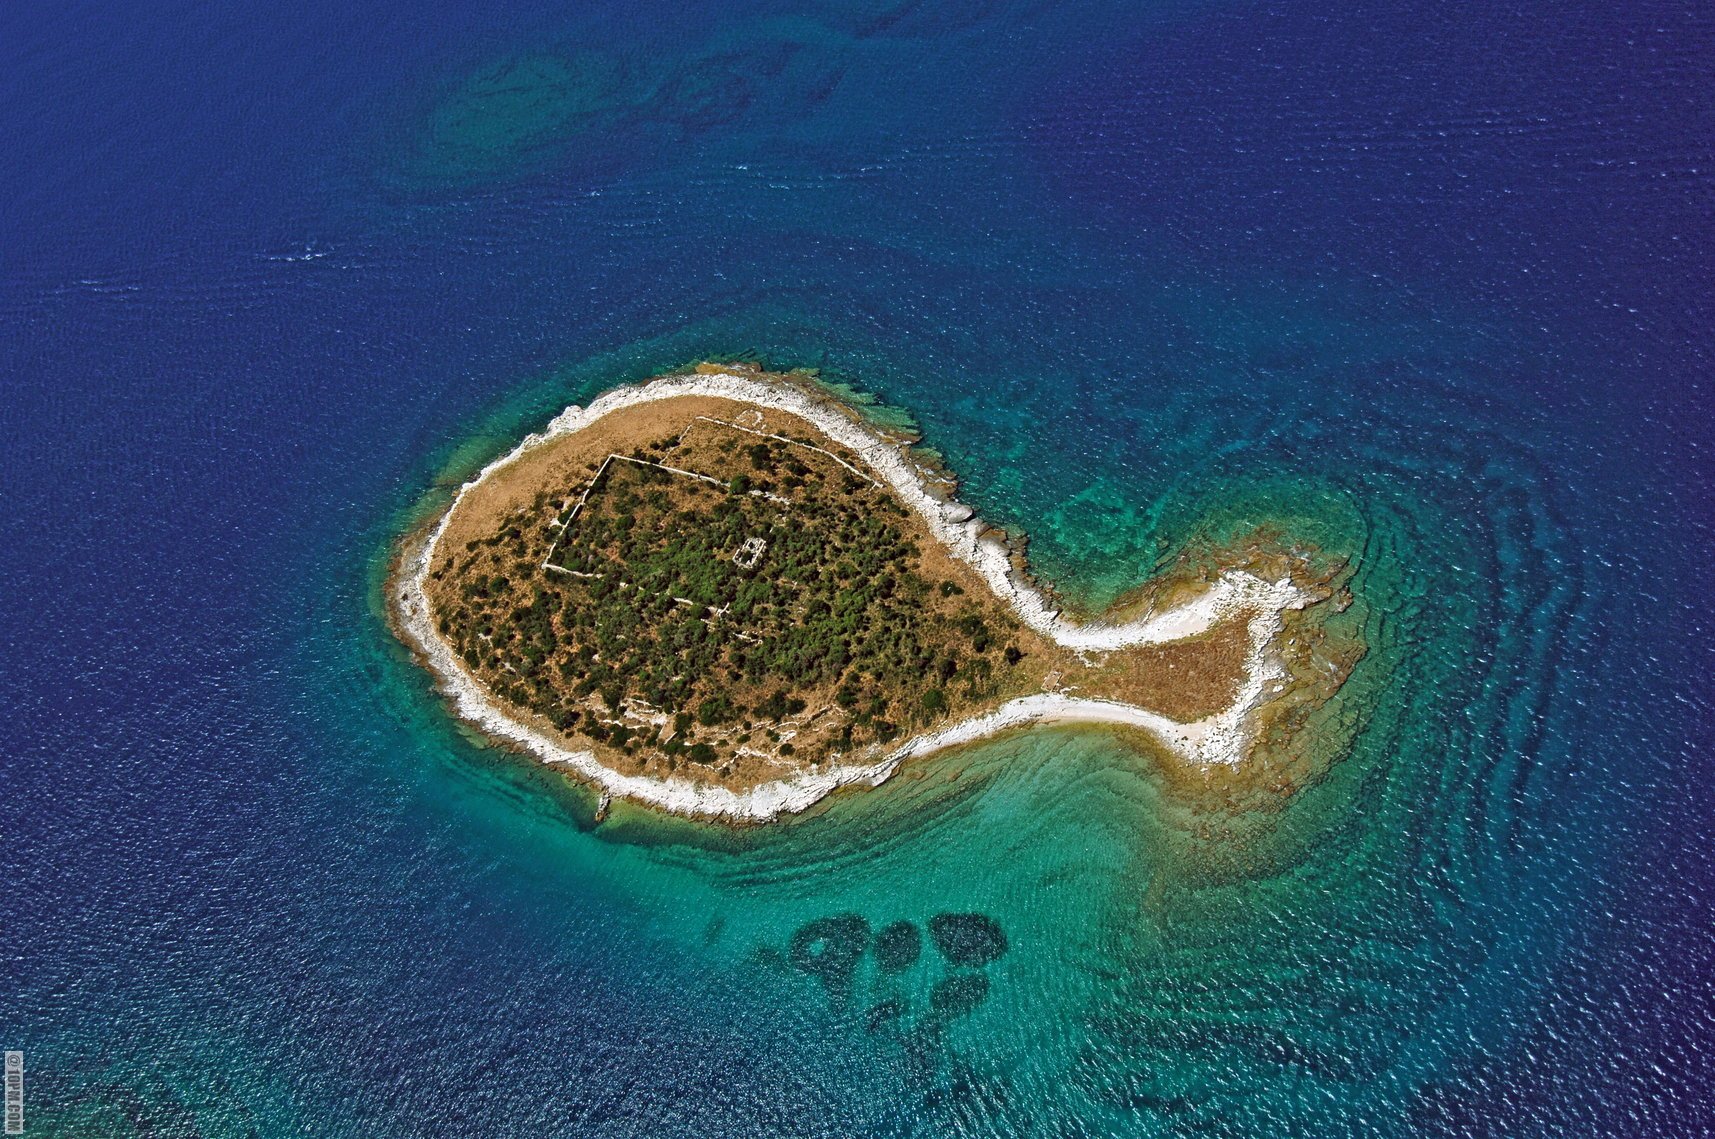 perierga.gr - Νησιά με παράξενα σχήματα εκπλήσσουν!